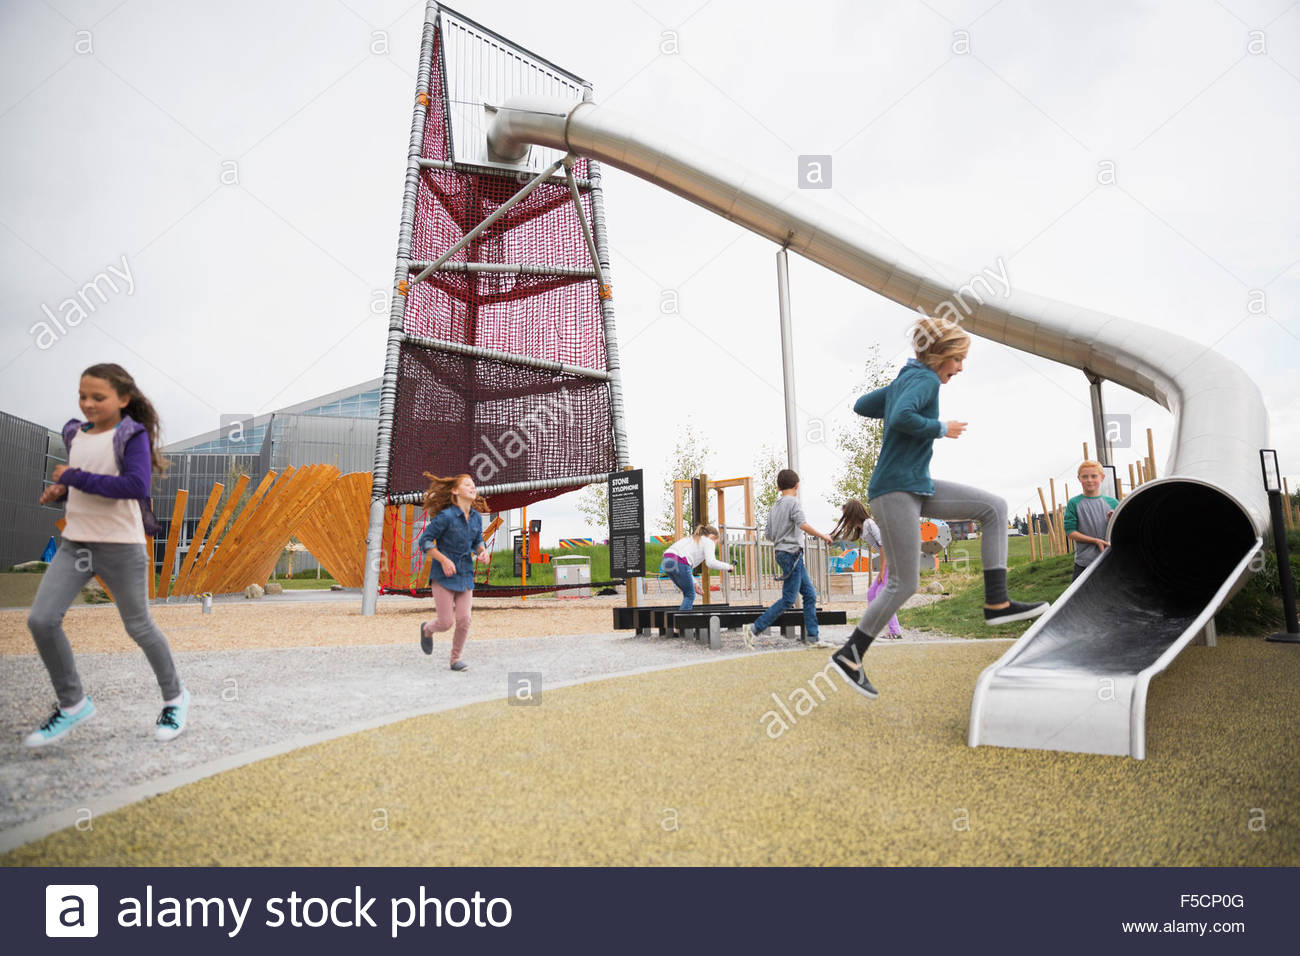 Kids playing at playground Stock Photo